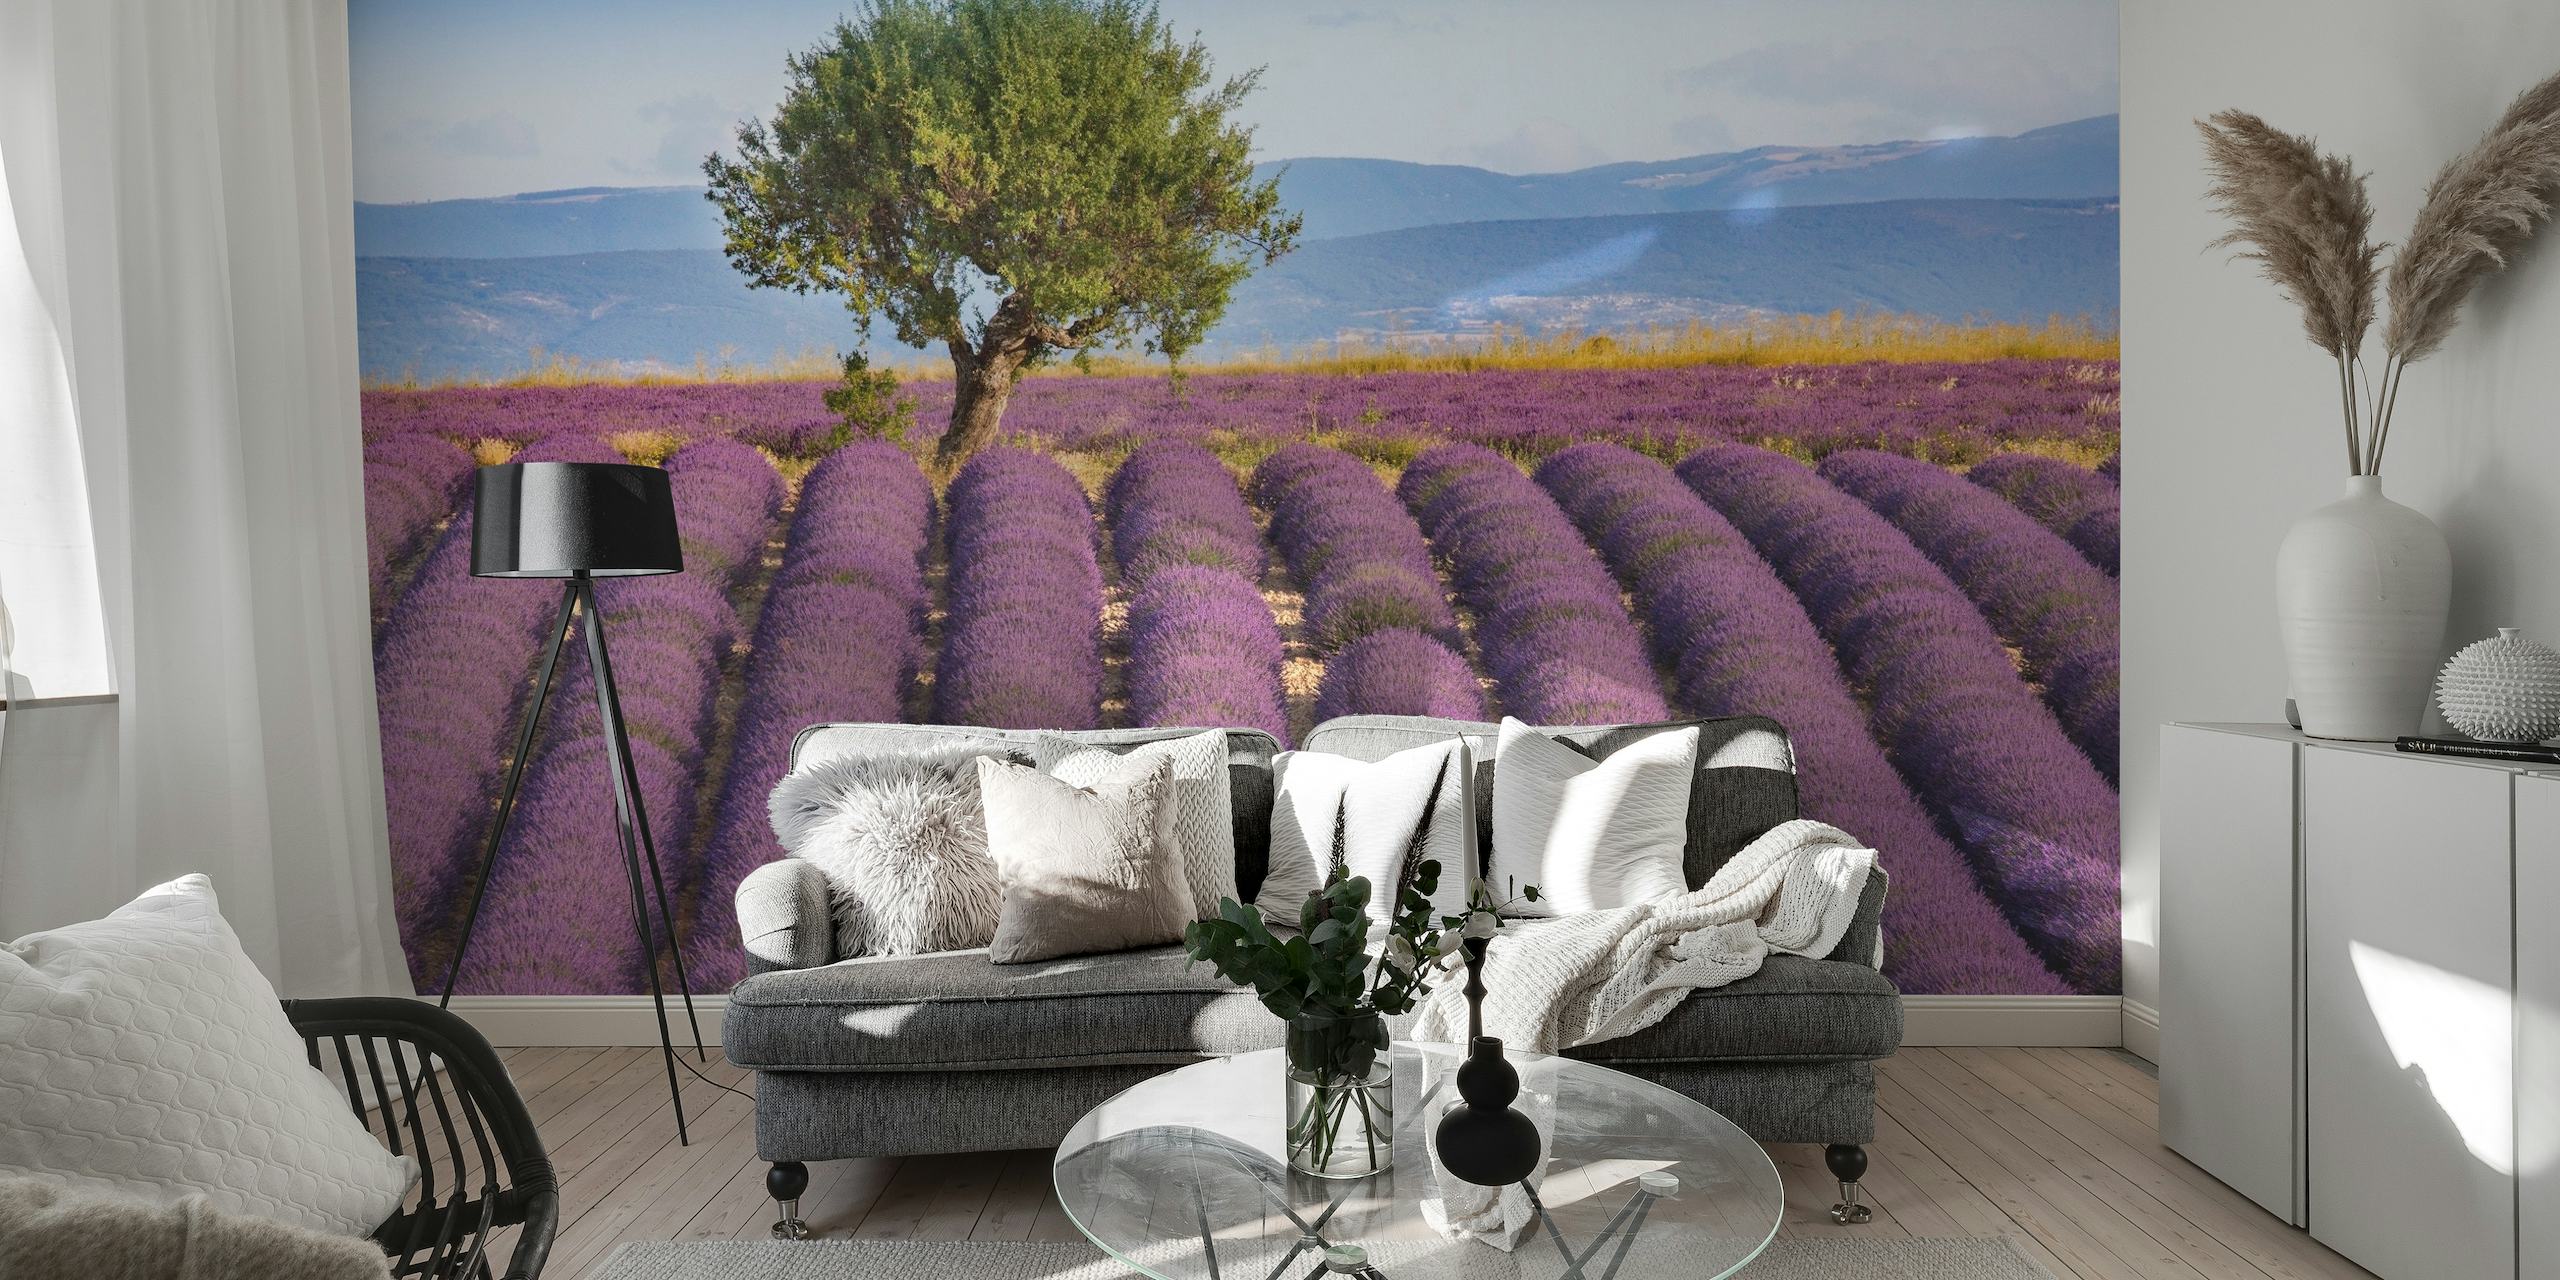 Une scène calme de lavande Haute Provence avec de riches champs violets sous un ciel clair